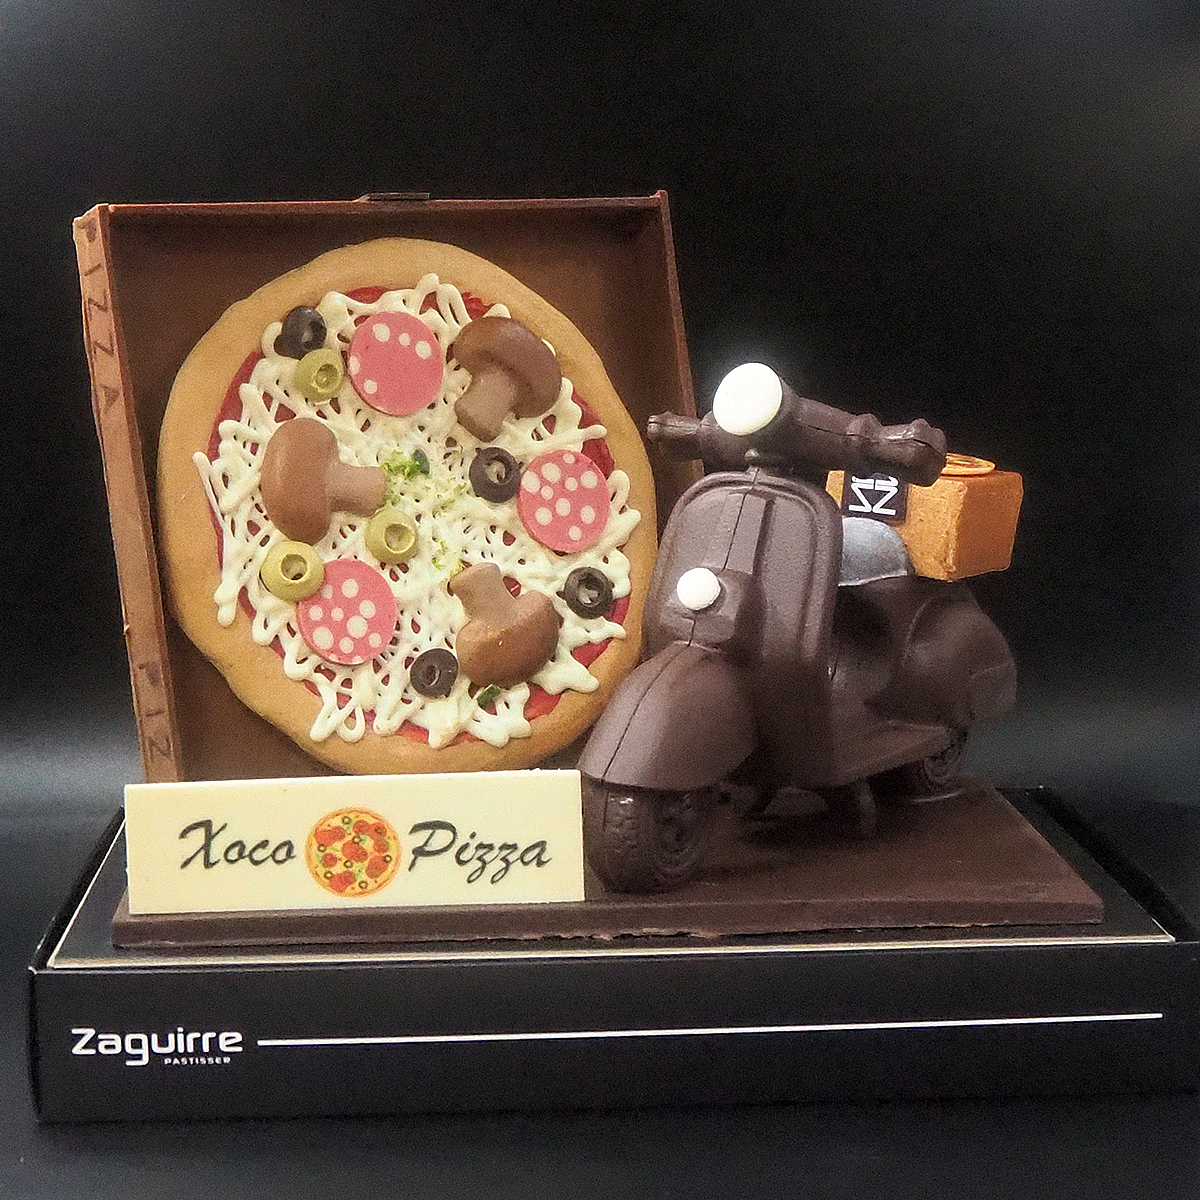 Mona de Pasqua de xocolata amb forma de pizza i moto per entrega a domicili elaborada per Zaguirre Pastisser.